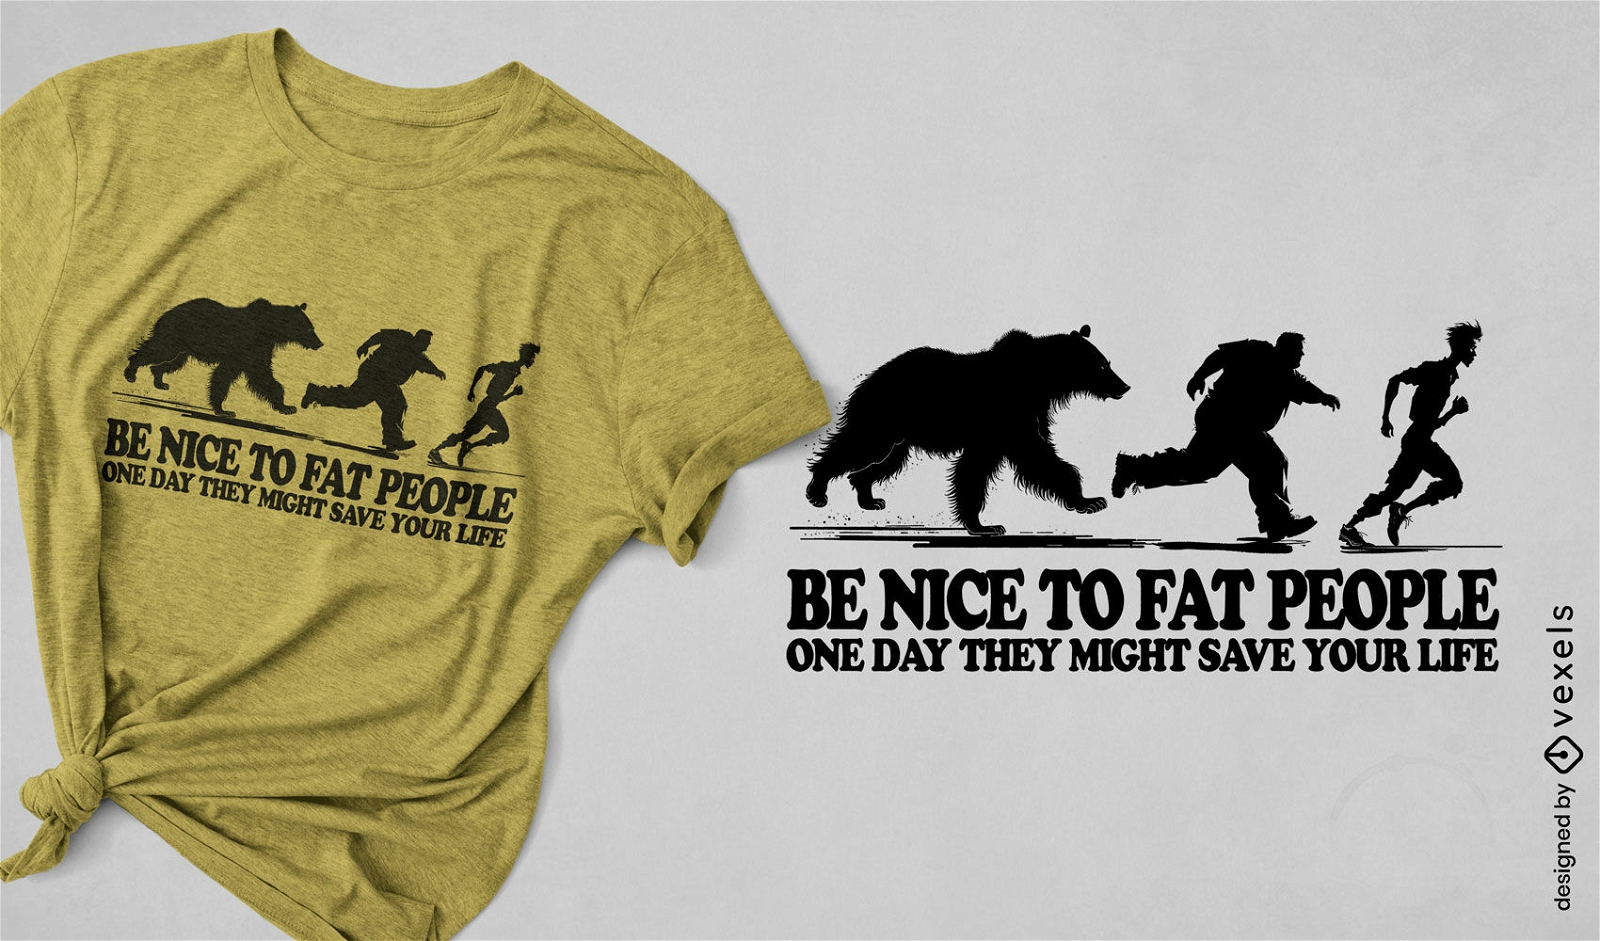 Bear chase evolution t-shirt design